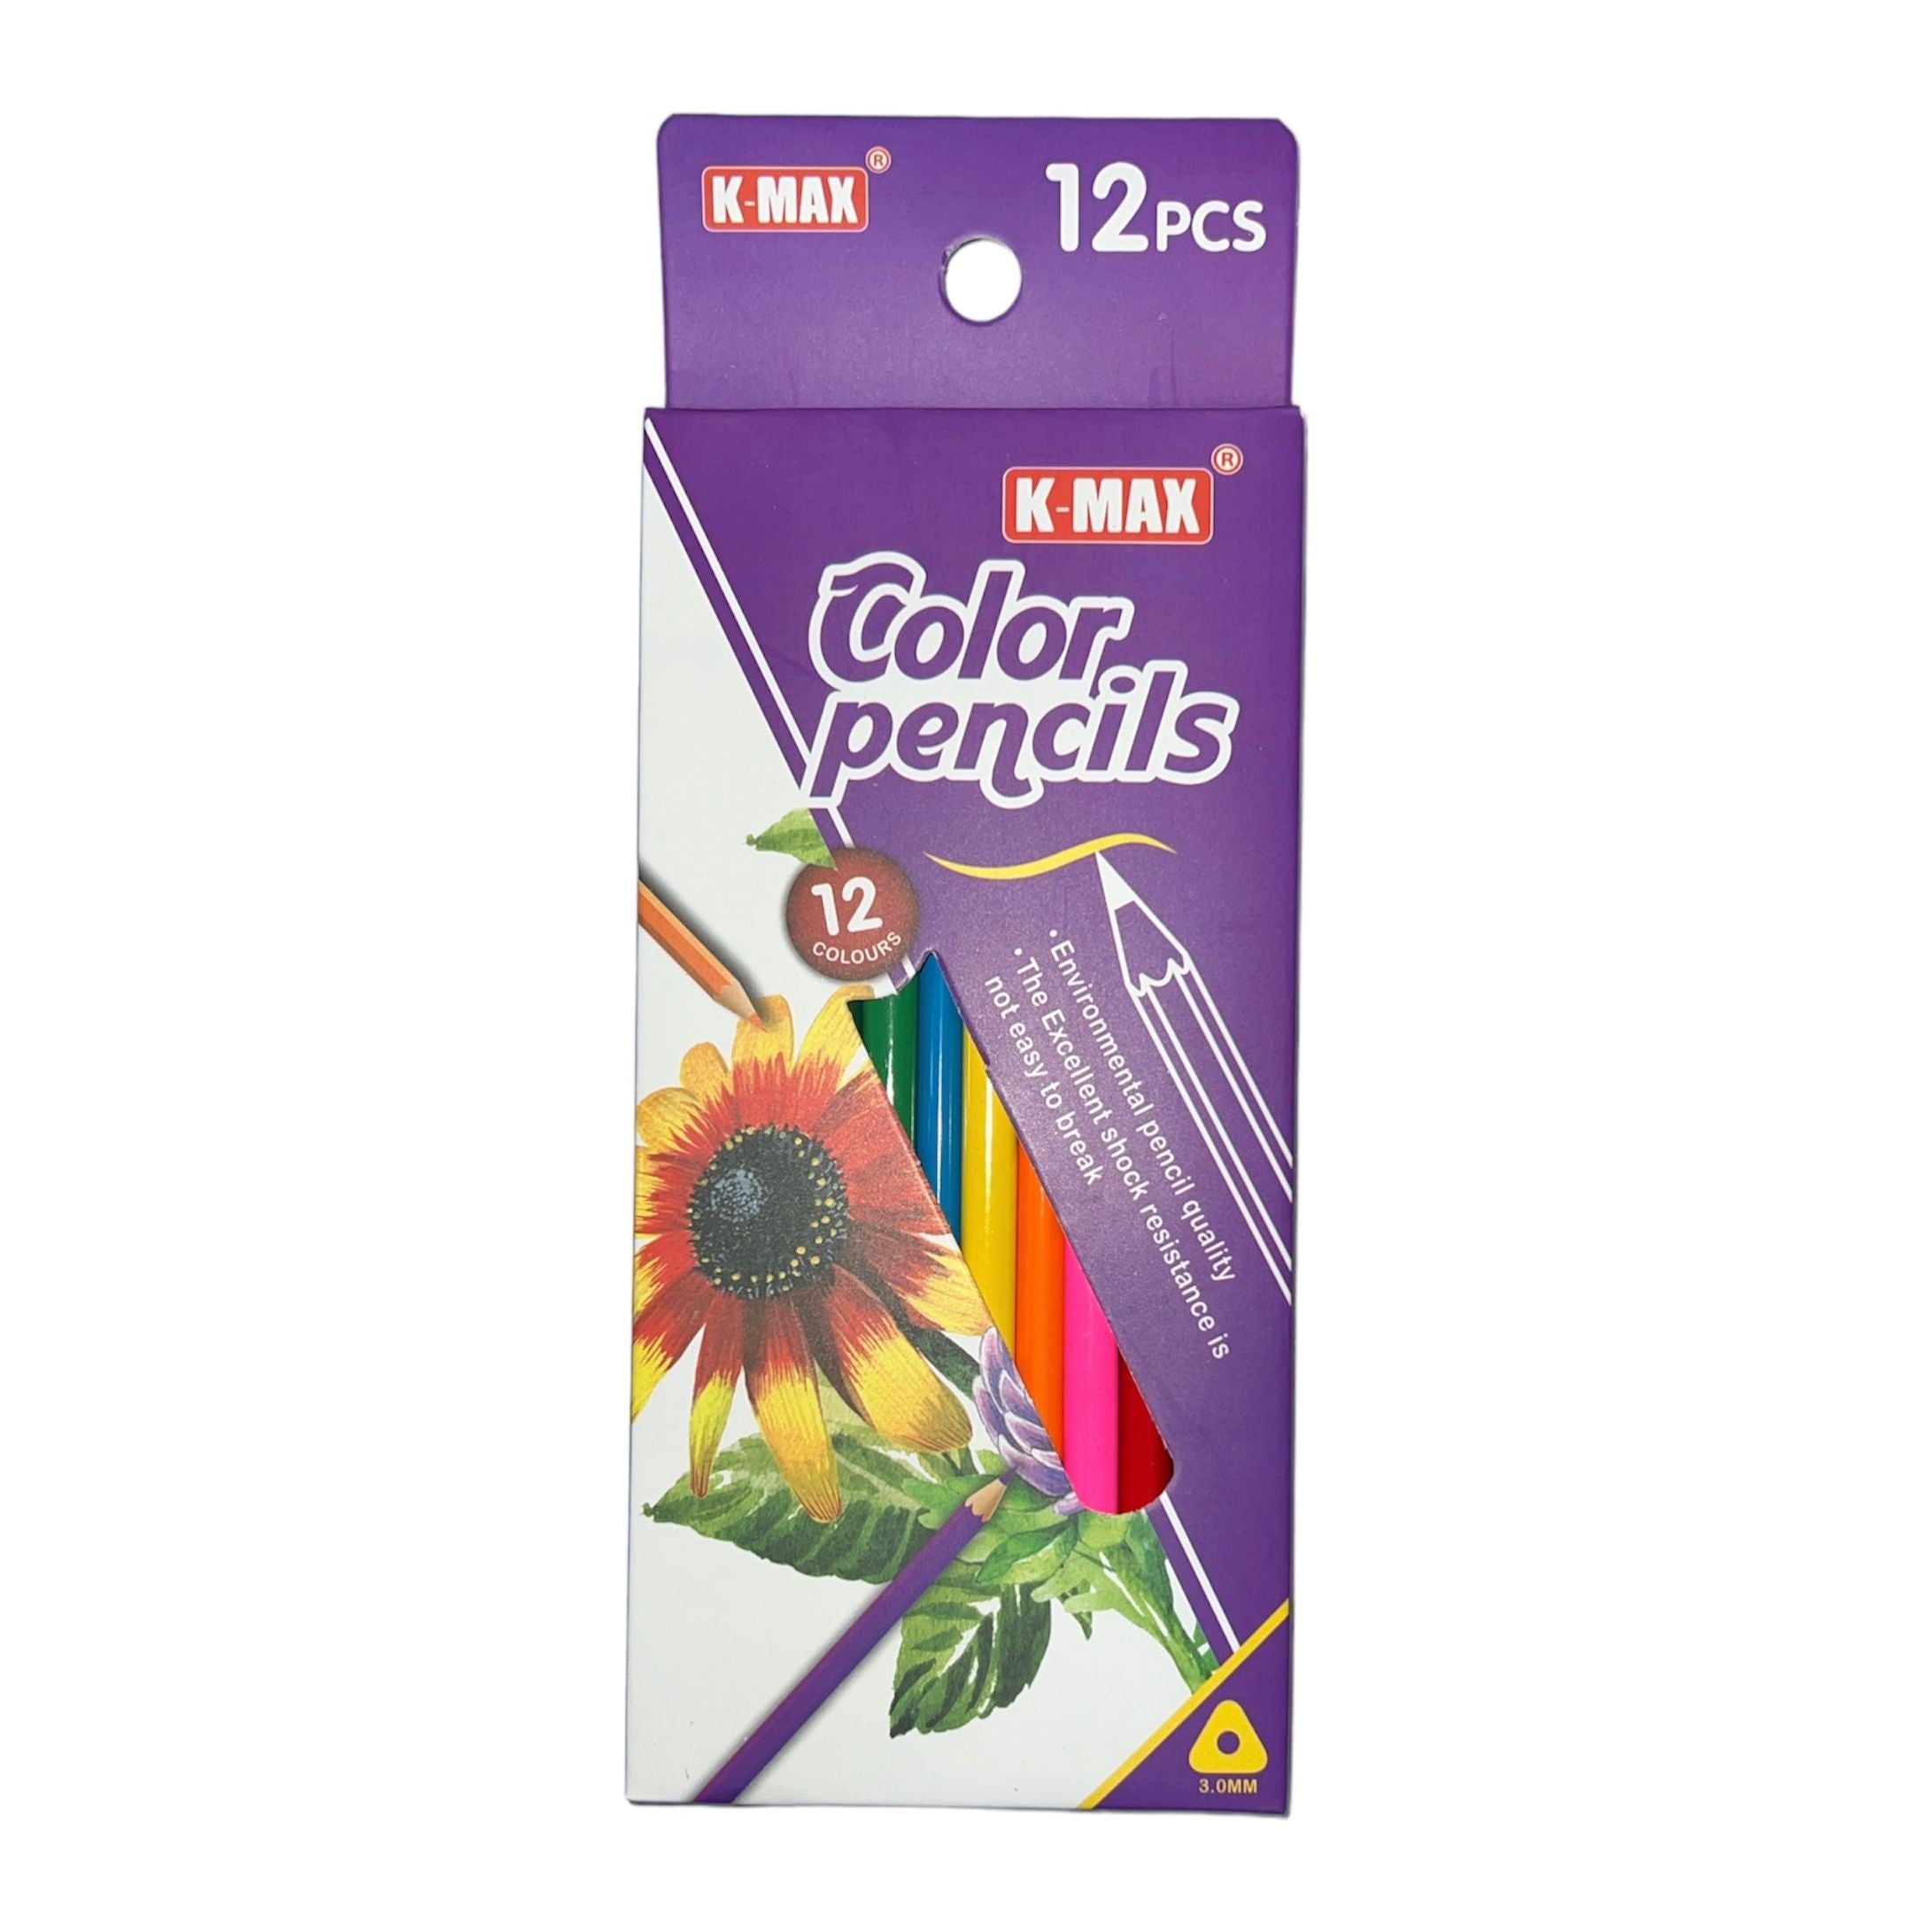 أقلام رصاص خشبية ملونة عالية الجودة من كيه ماكس V.7012-12 مقاس 3.0 ملم، مجموعة مكونة من 12 قطعة. - متعدد الألوان